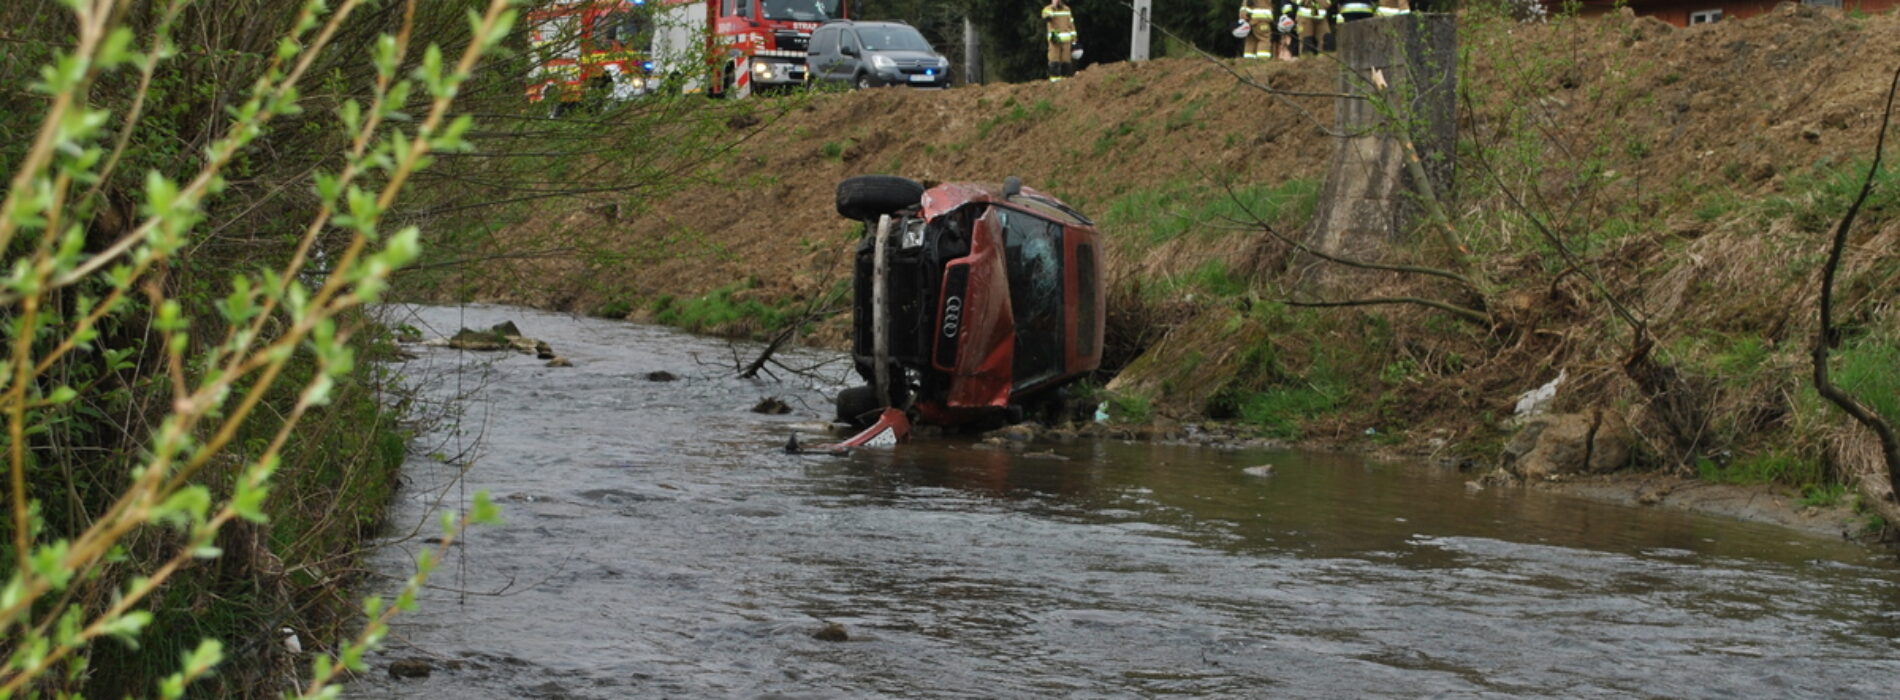 Audi wjechało do potoku – na szczęście nikt nie ucierpiał w tym zdarzeniu